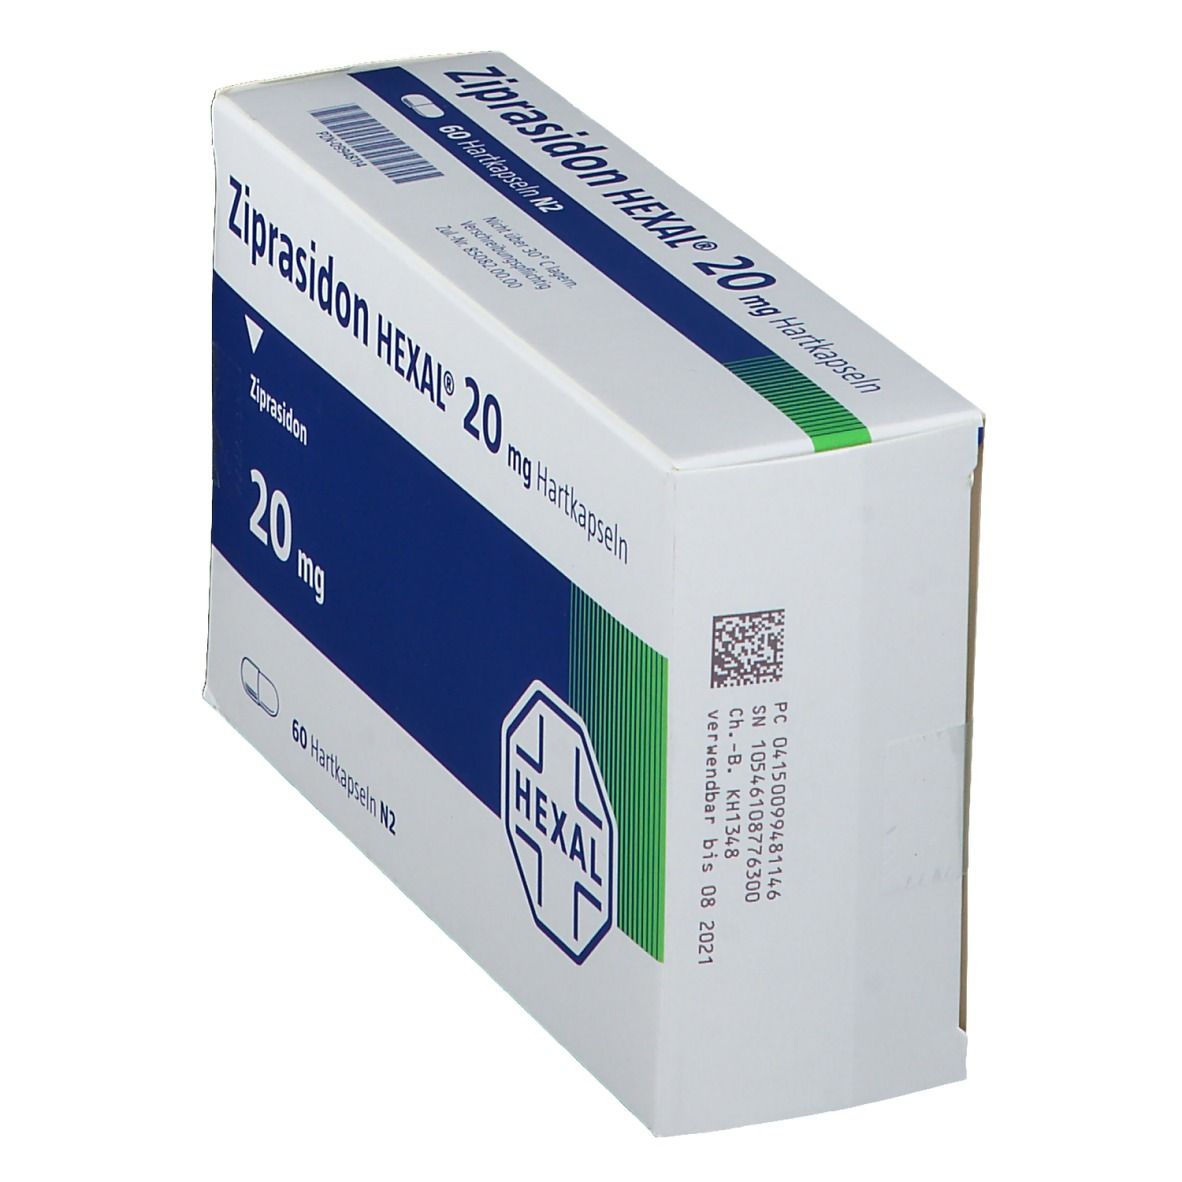 Ziprasidon HEXAL® 20 mg